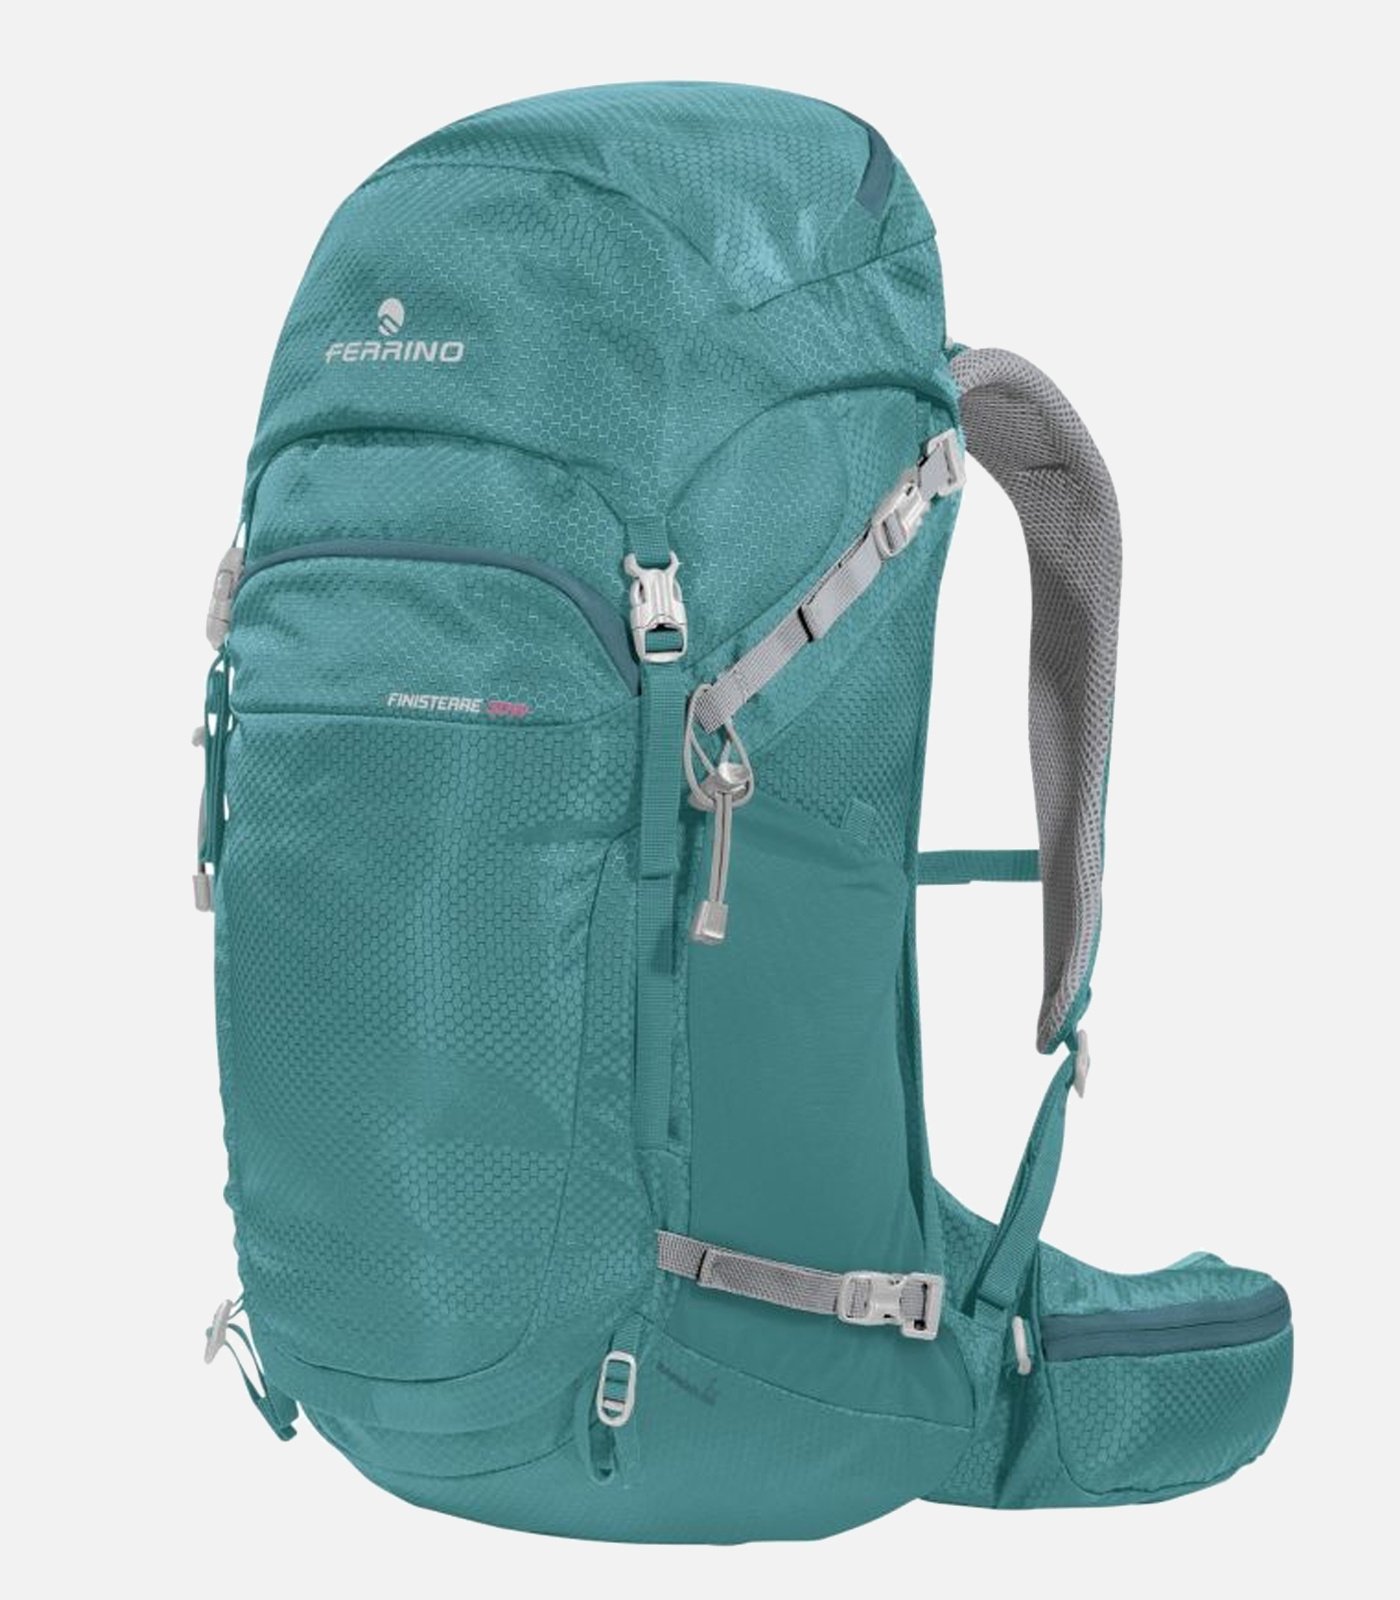 FERRINO hiking backpack with mesh backpack